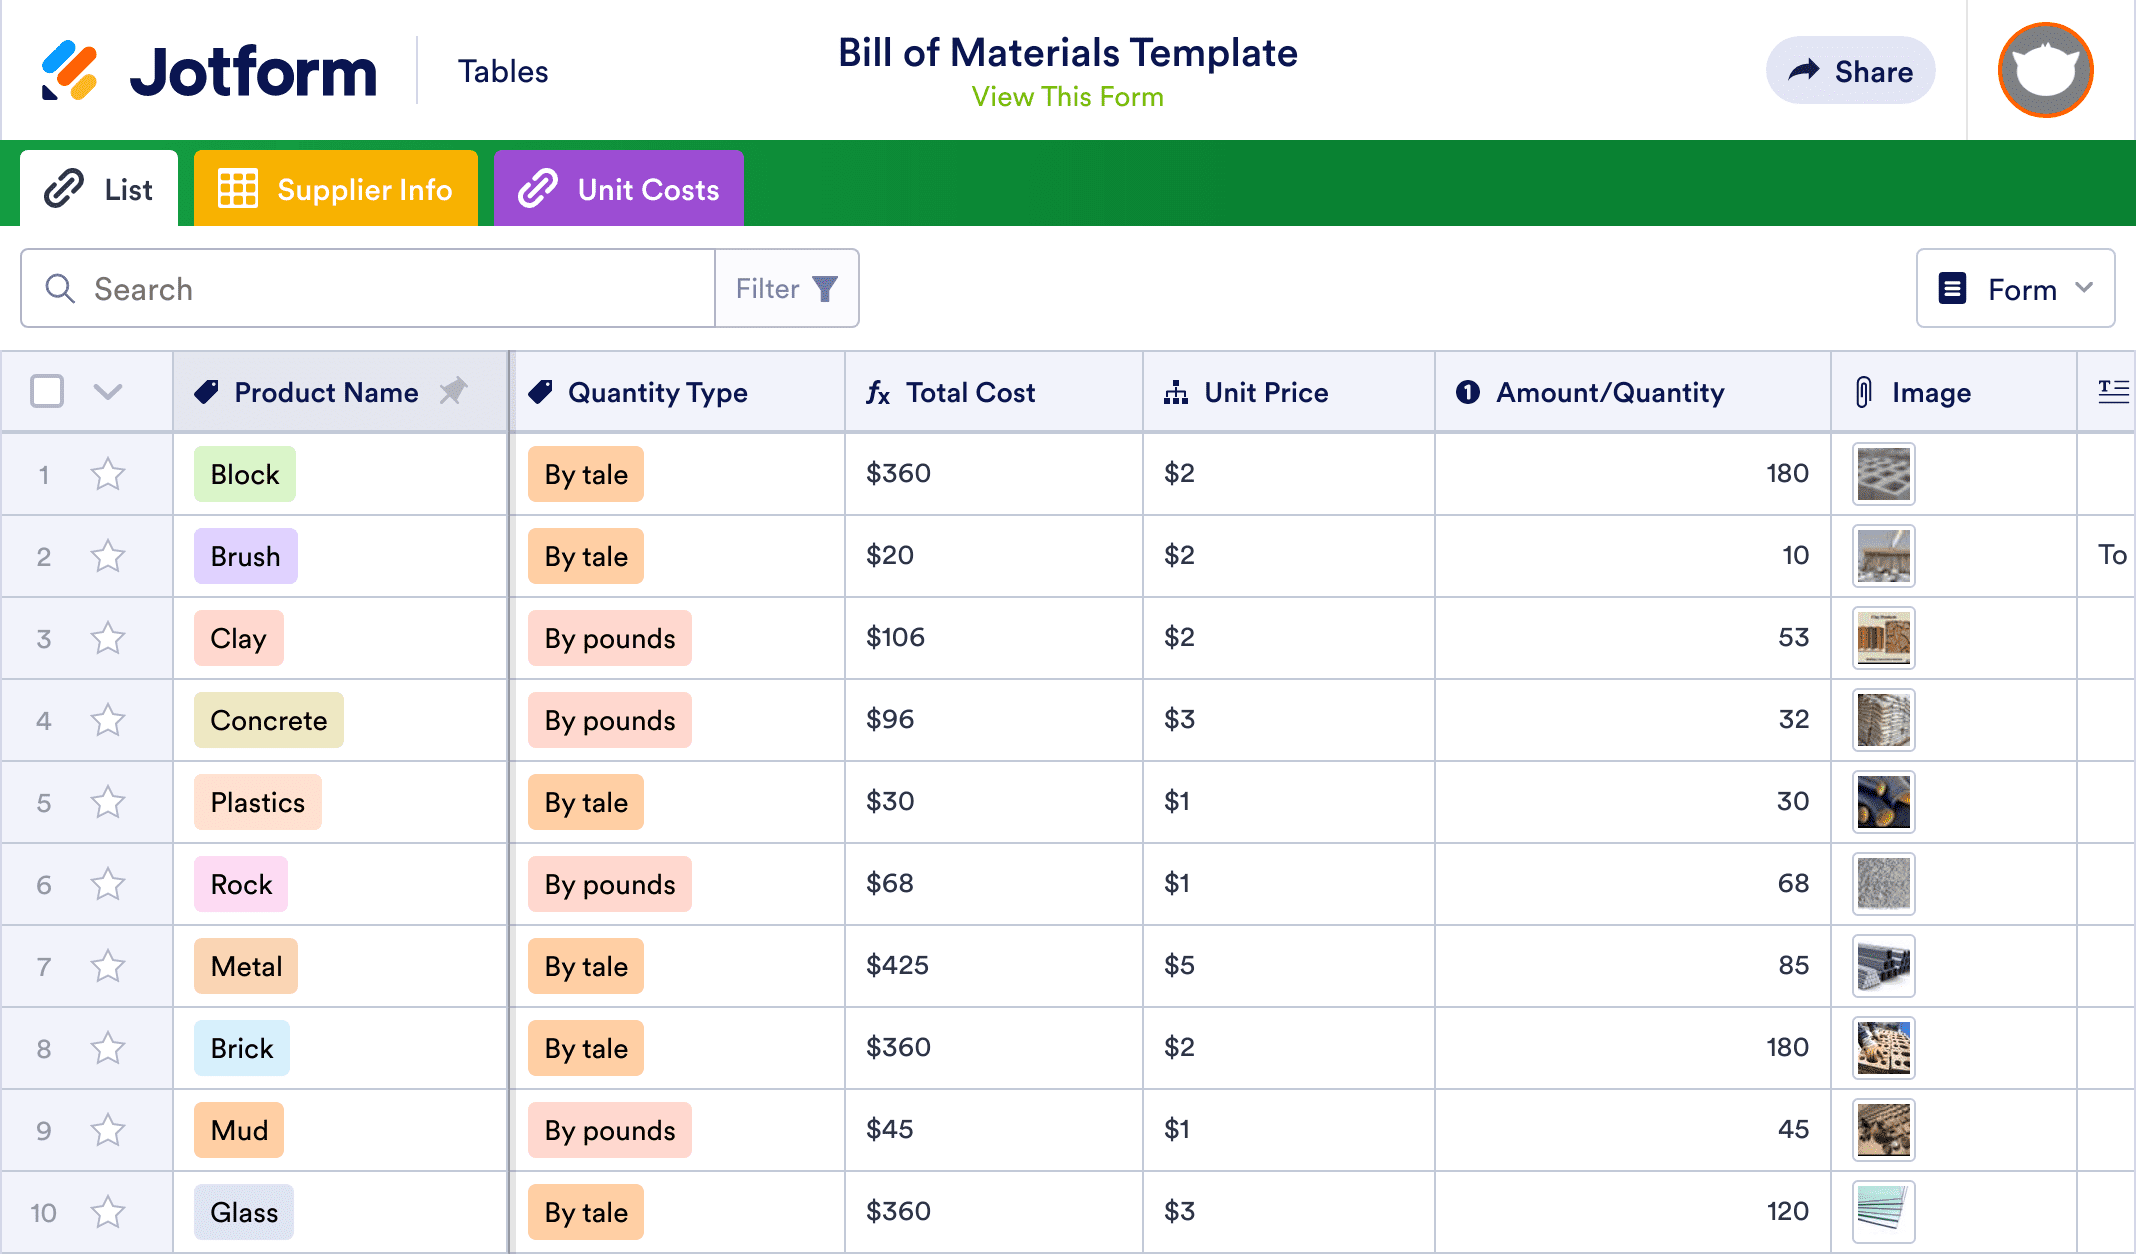 Bill of Materials Template | Jotform Tables